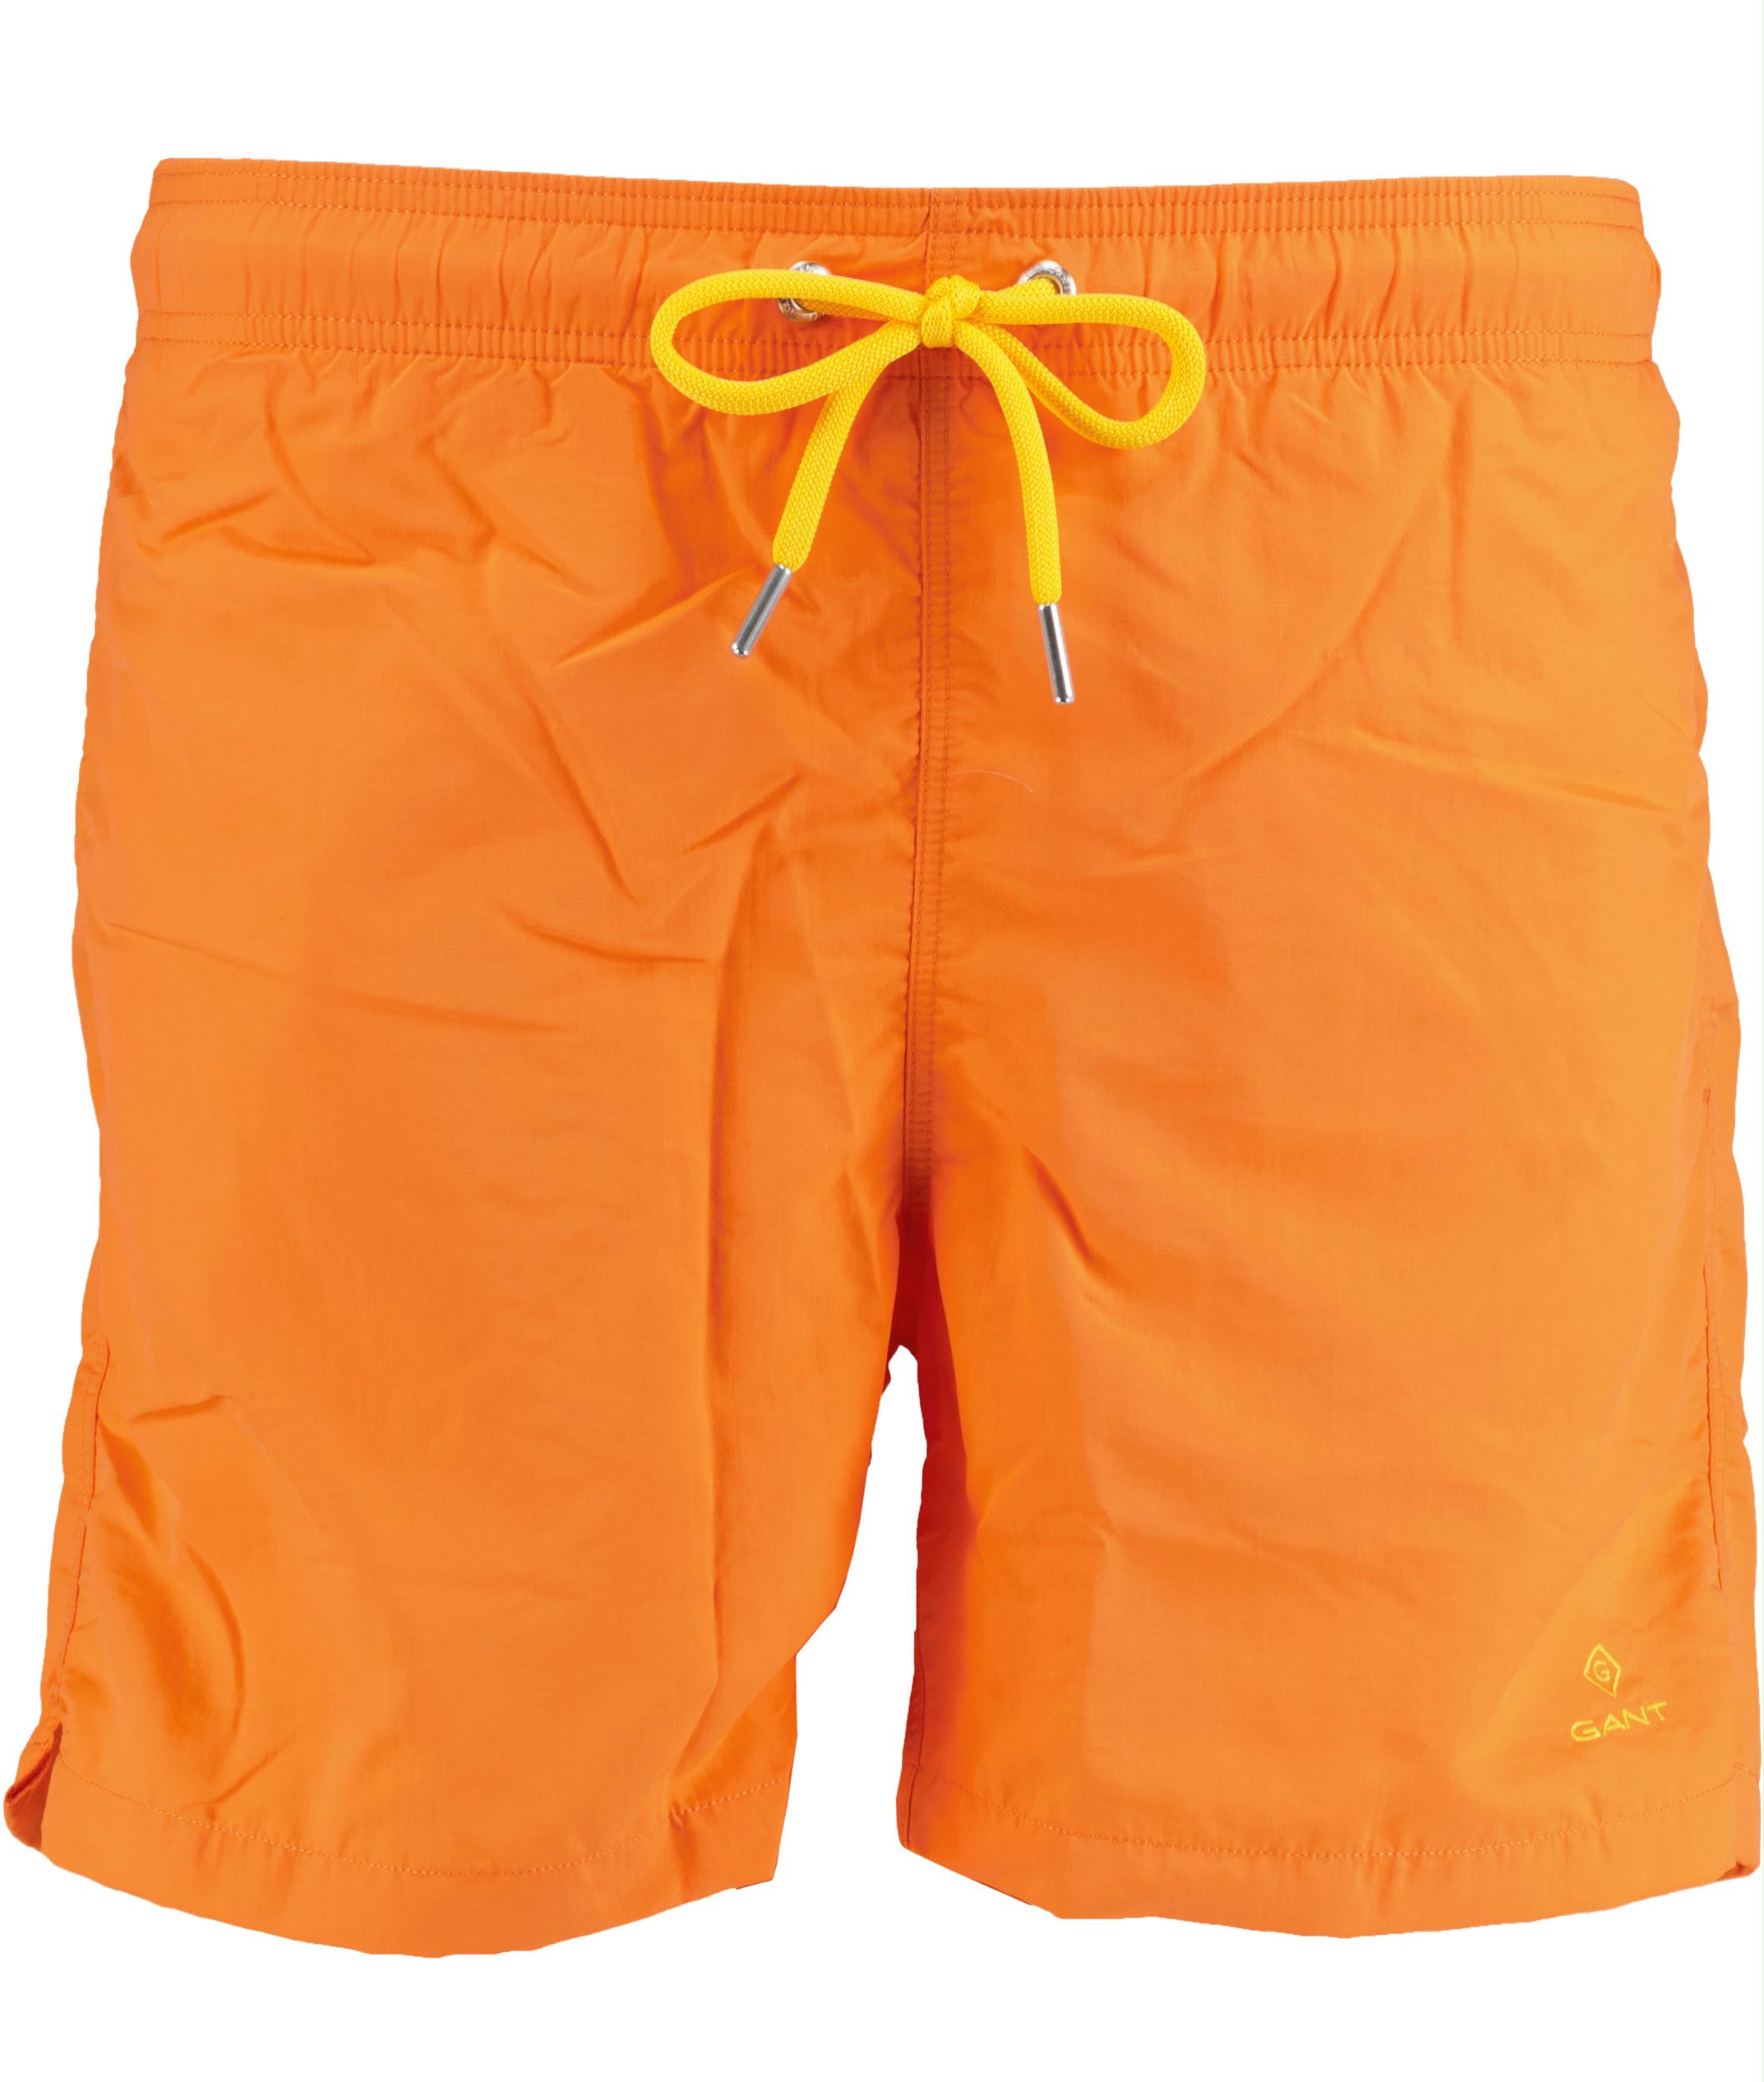 Gant Zwembroek Oranje CF Swim Shorts 922016001 806